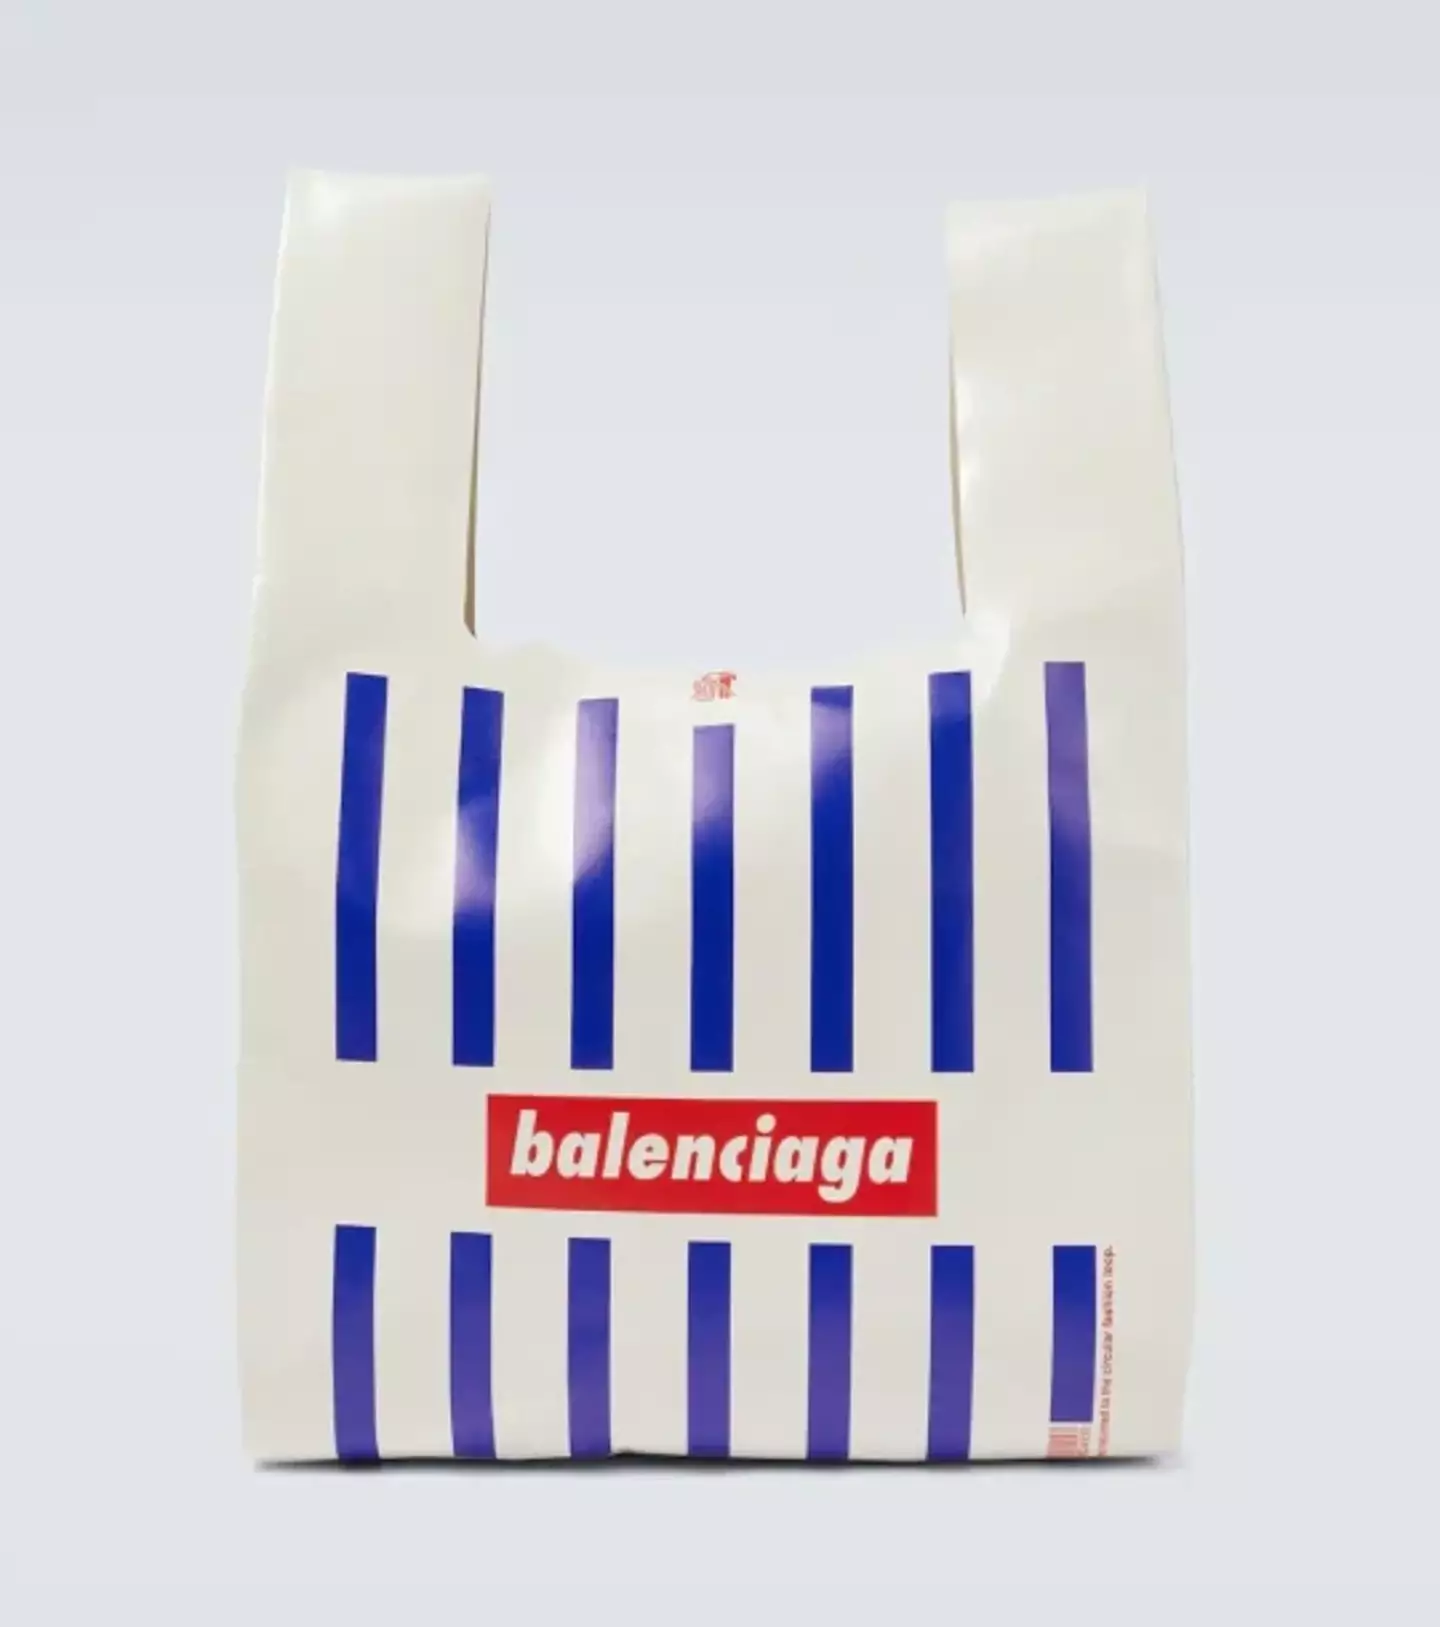 The Balenciaga bag.